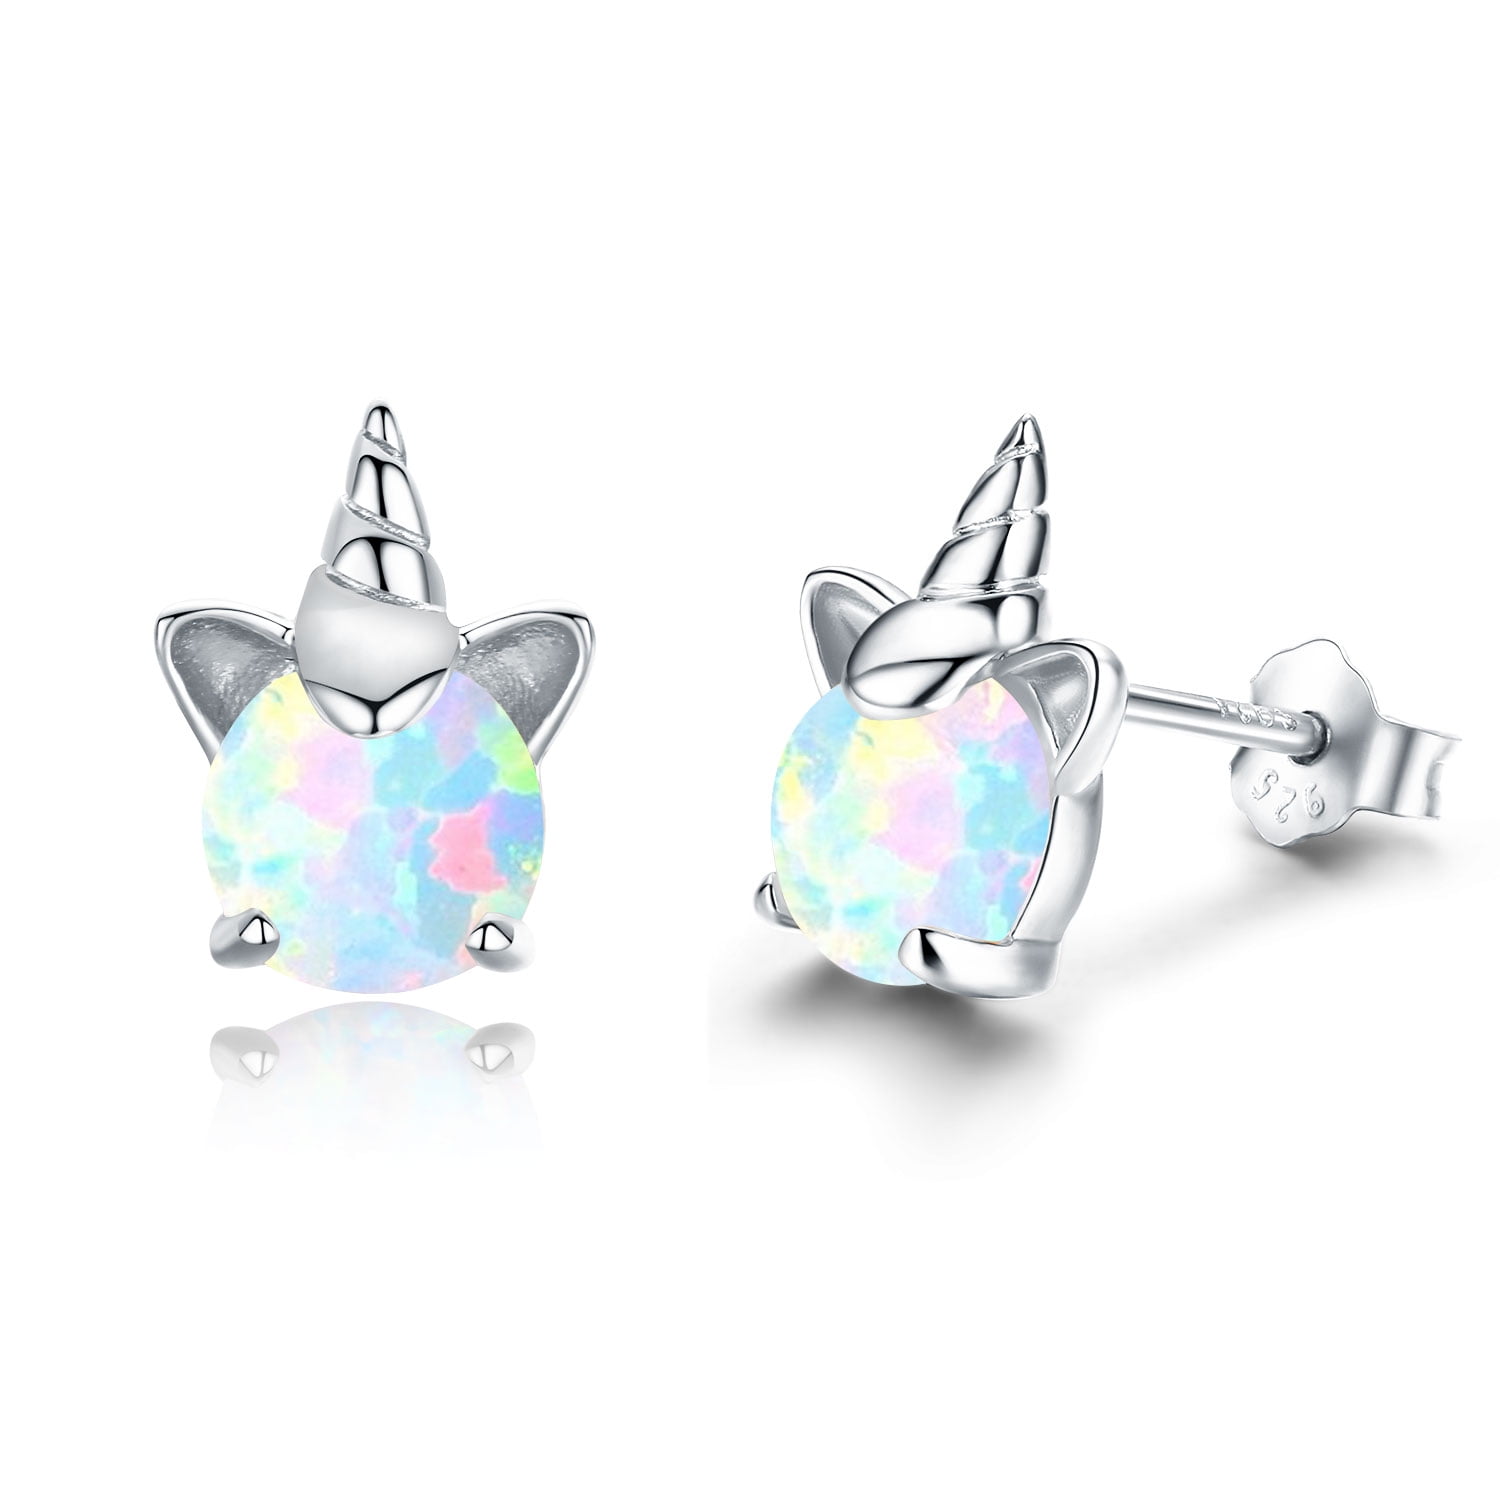 PRAYMOS 925 Sterling Silver Earrings for Women Hypoallergenic Dangle Drop Hoop Earrings Cute Dainty Birthday jewelry Gifts 